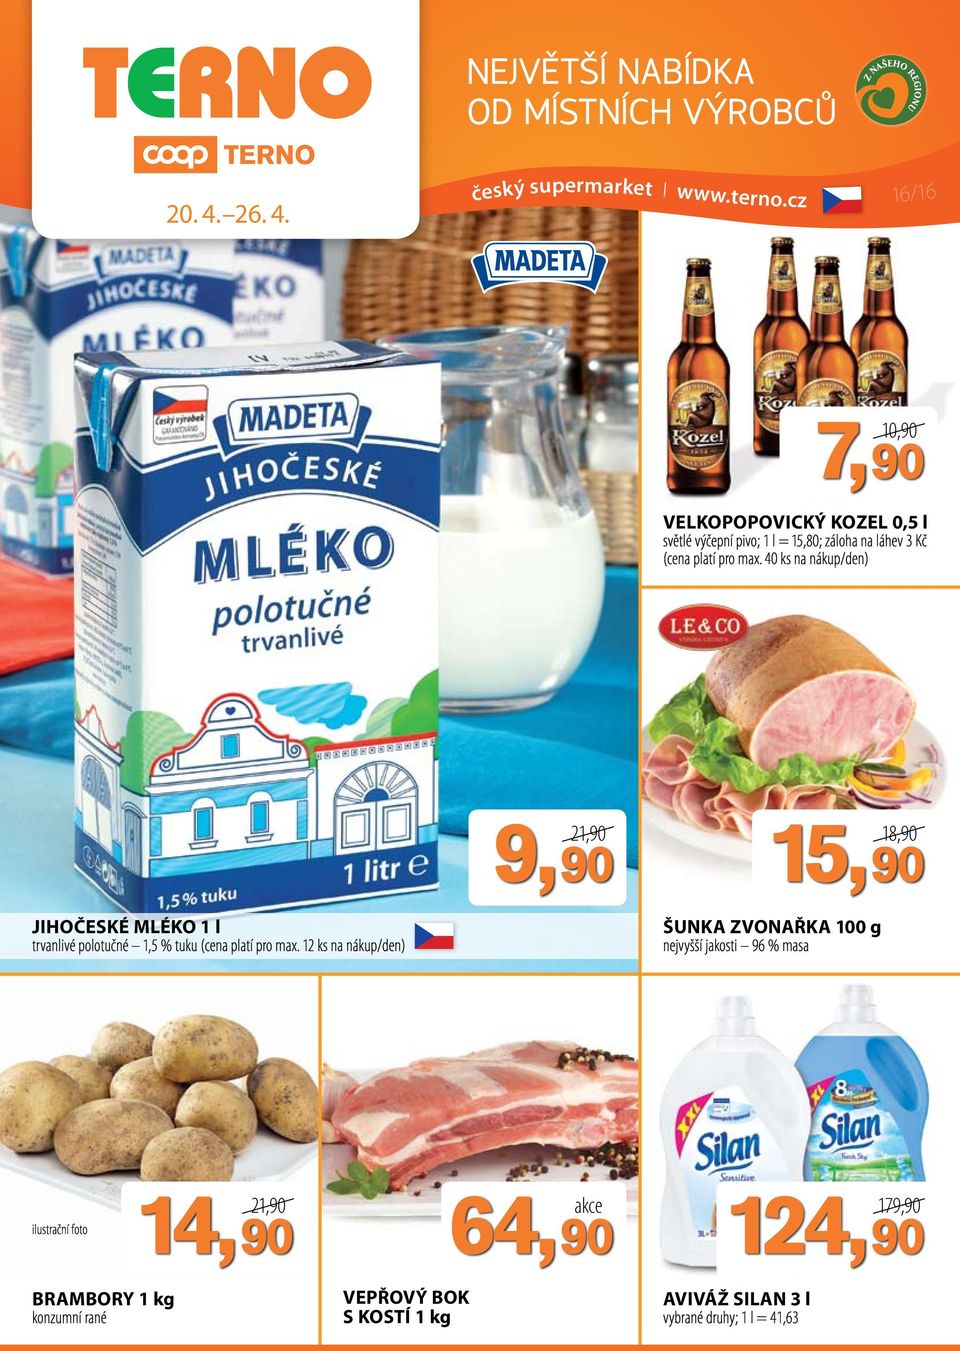 český supermarket I 16/16 10,90 7,90 Velkopopovický Kozel 0,5 l světlé výčepní pivo; 1 l = 15,80; záloha na